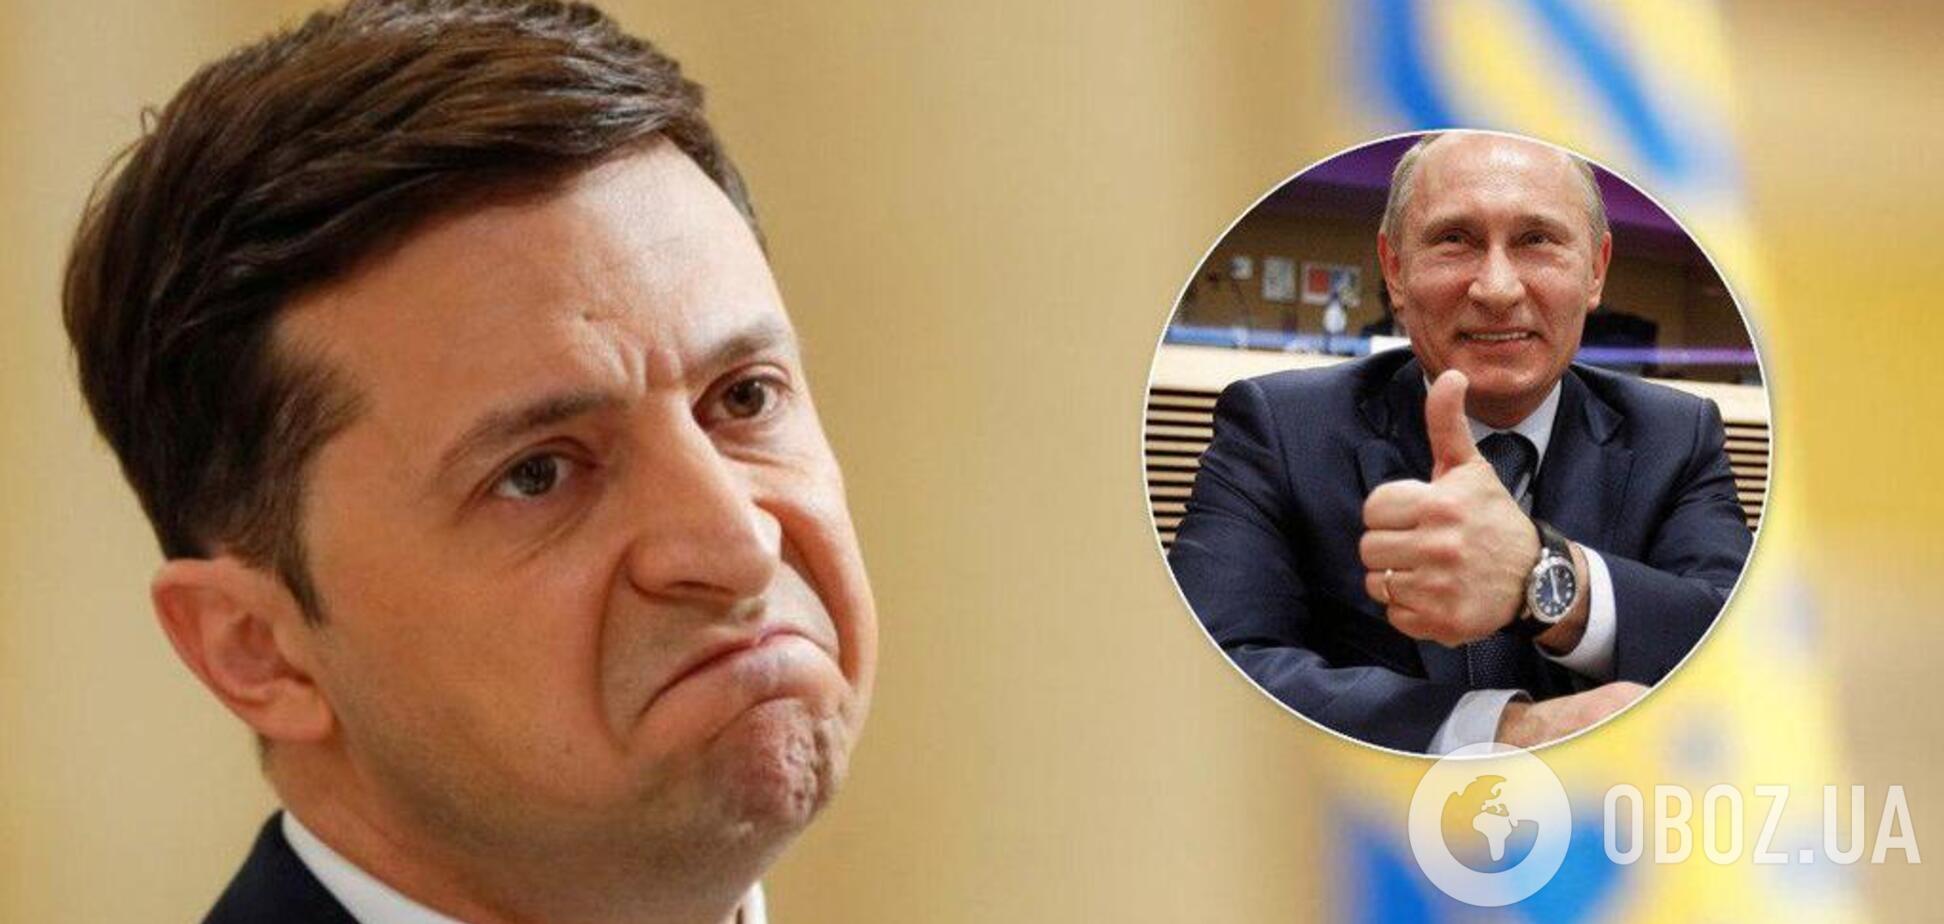 Путин предлагал Зеленскому 'спасти' Донбасс? Появились новые детали разговора